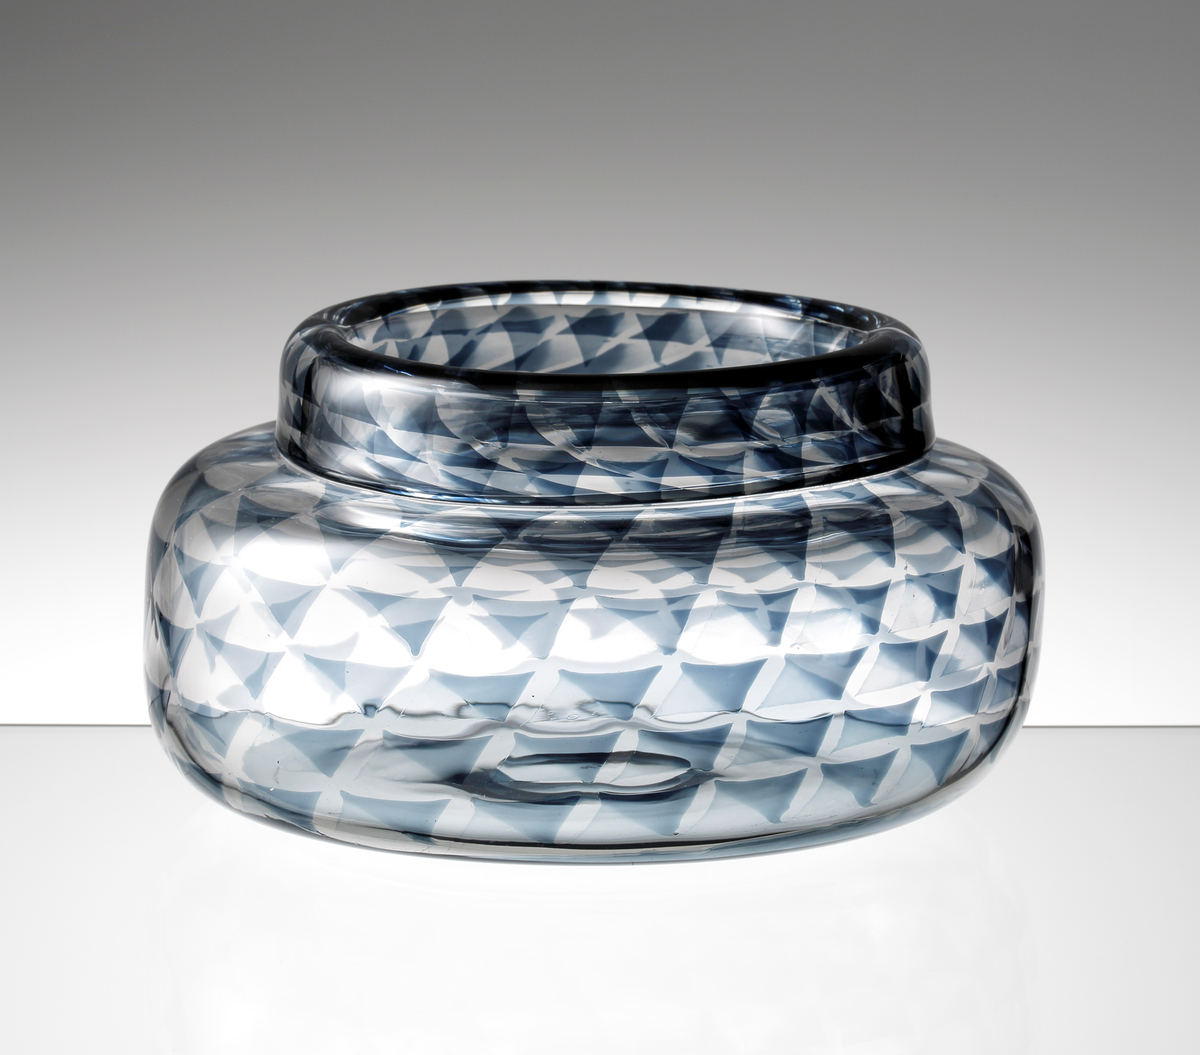 Formgiven av Ingeborg Lundin. Graalvas med låg cylindrisk form och omvikt mynningskant. Utförd med gråblått
geometriskt mönster.